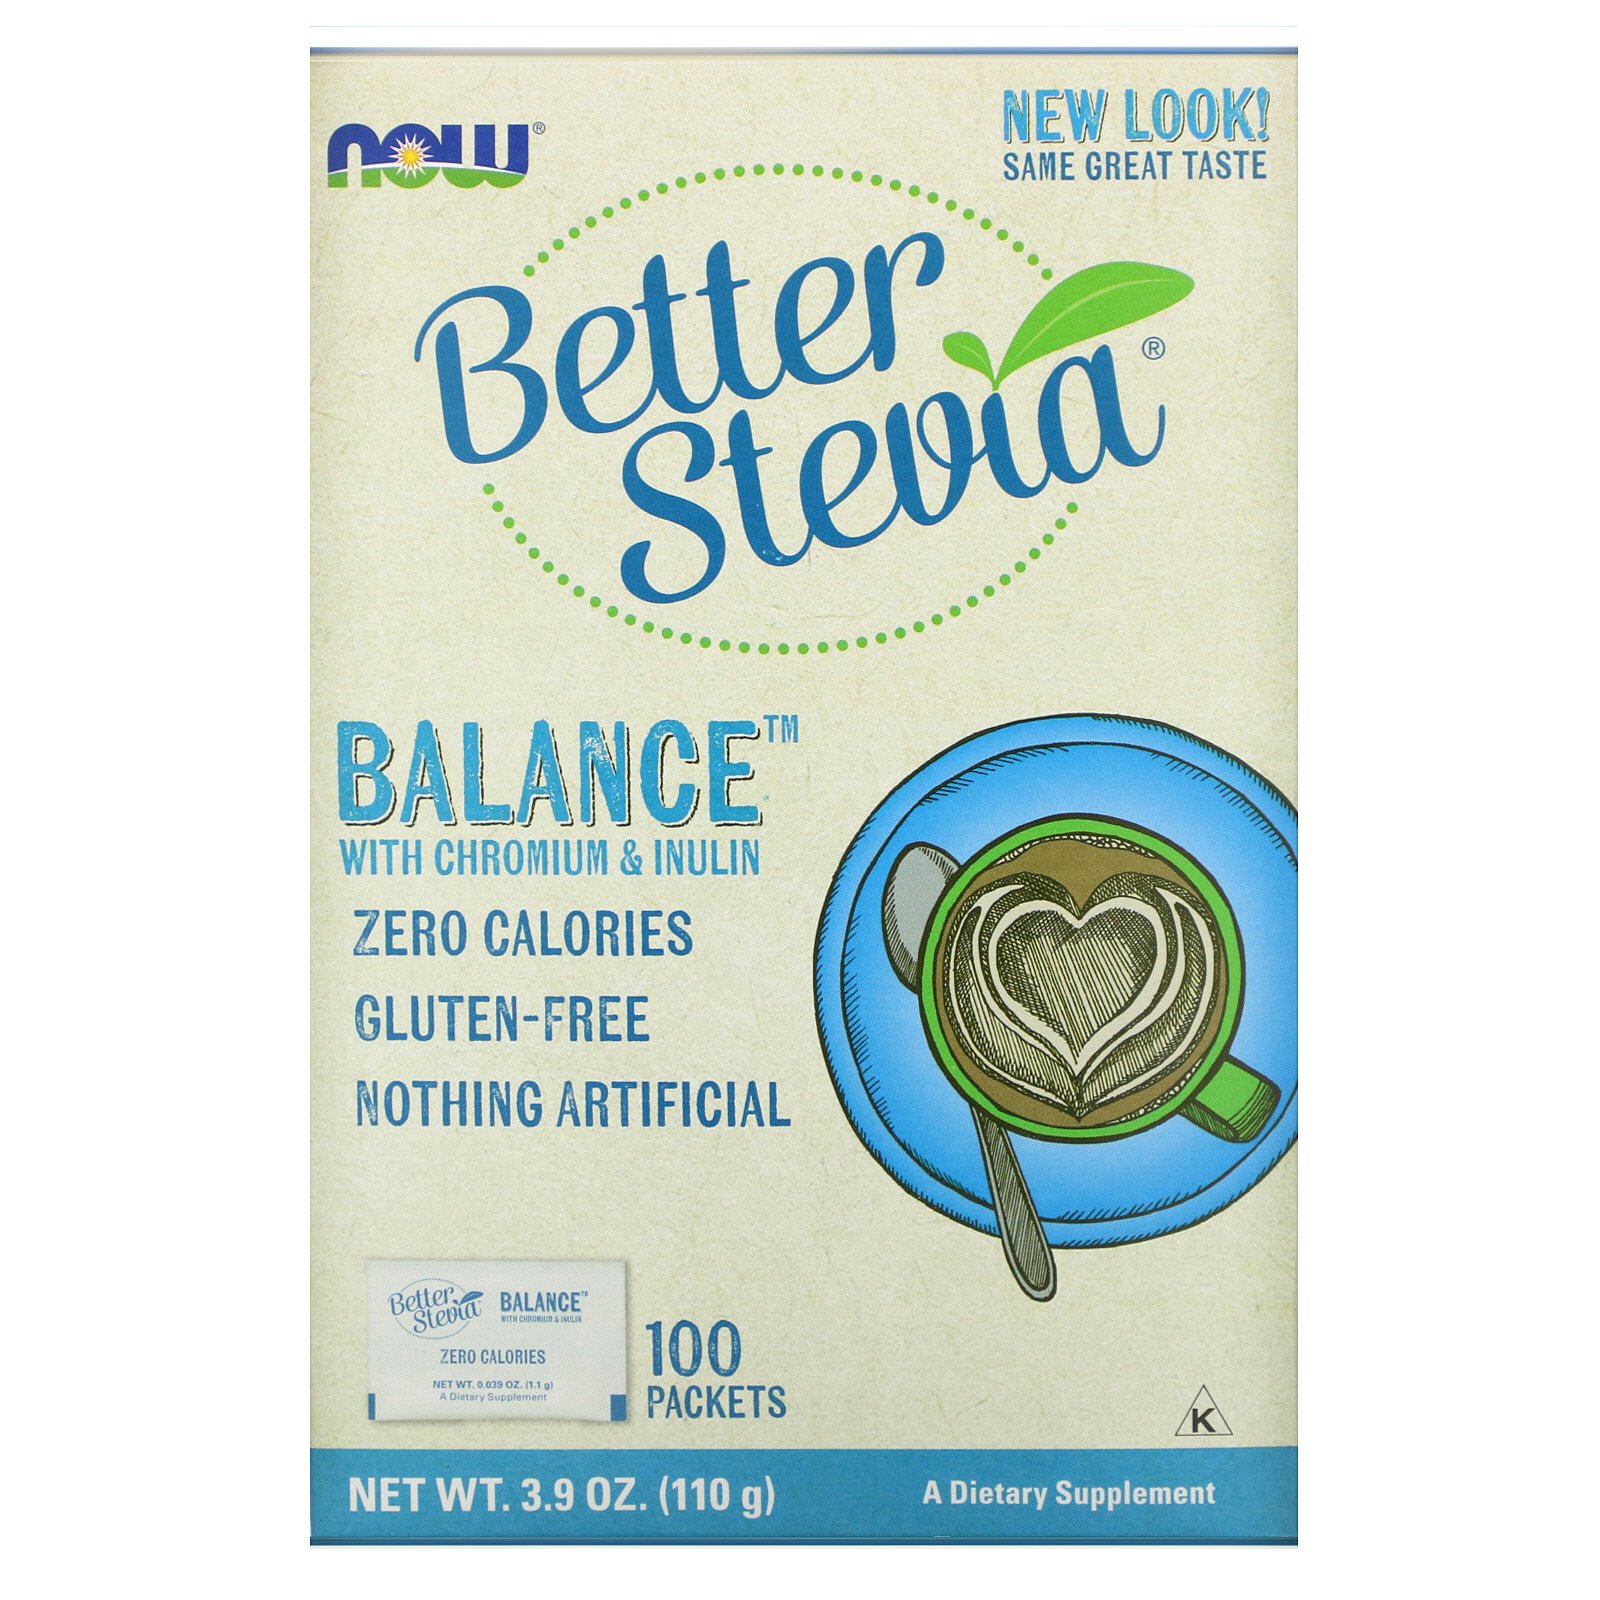 Акция, Stevia 1100 мг - 100 пакетов (Срок до 07.22)